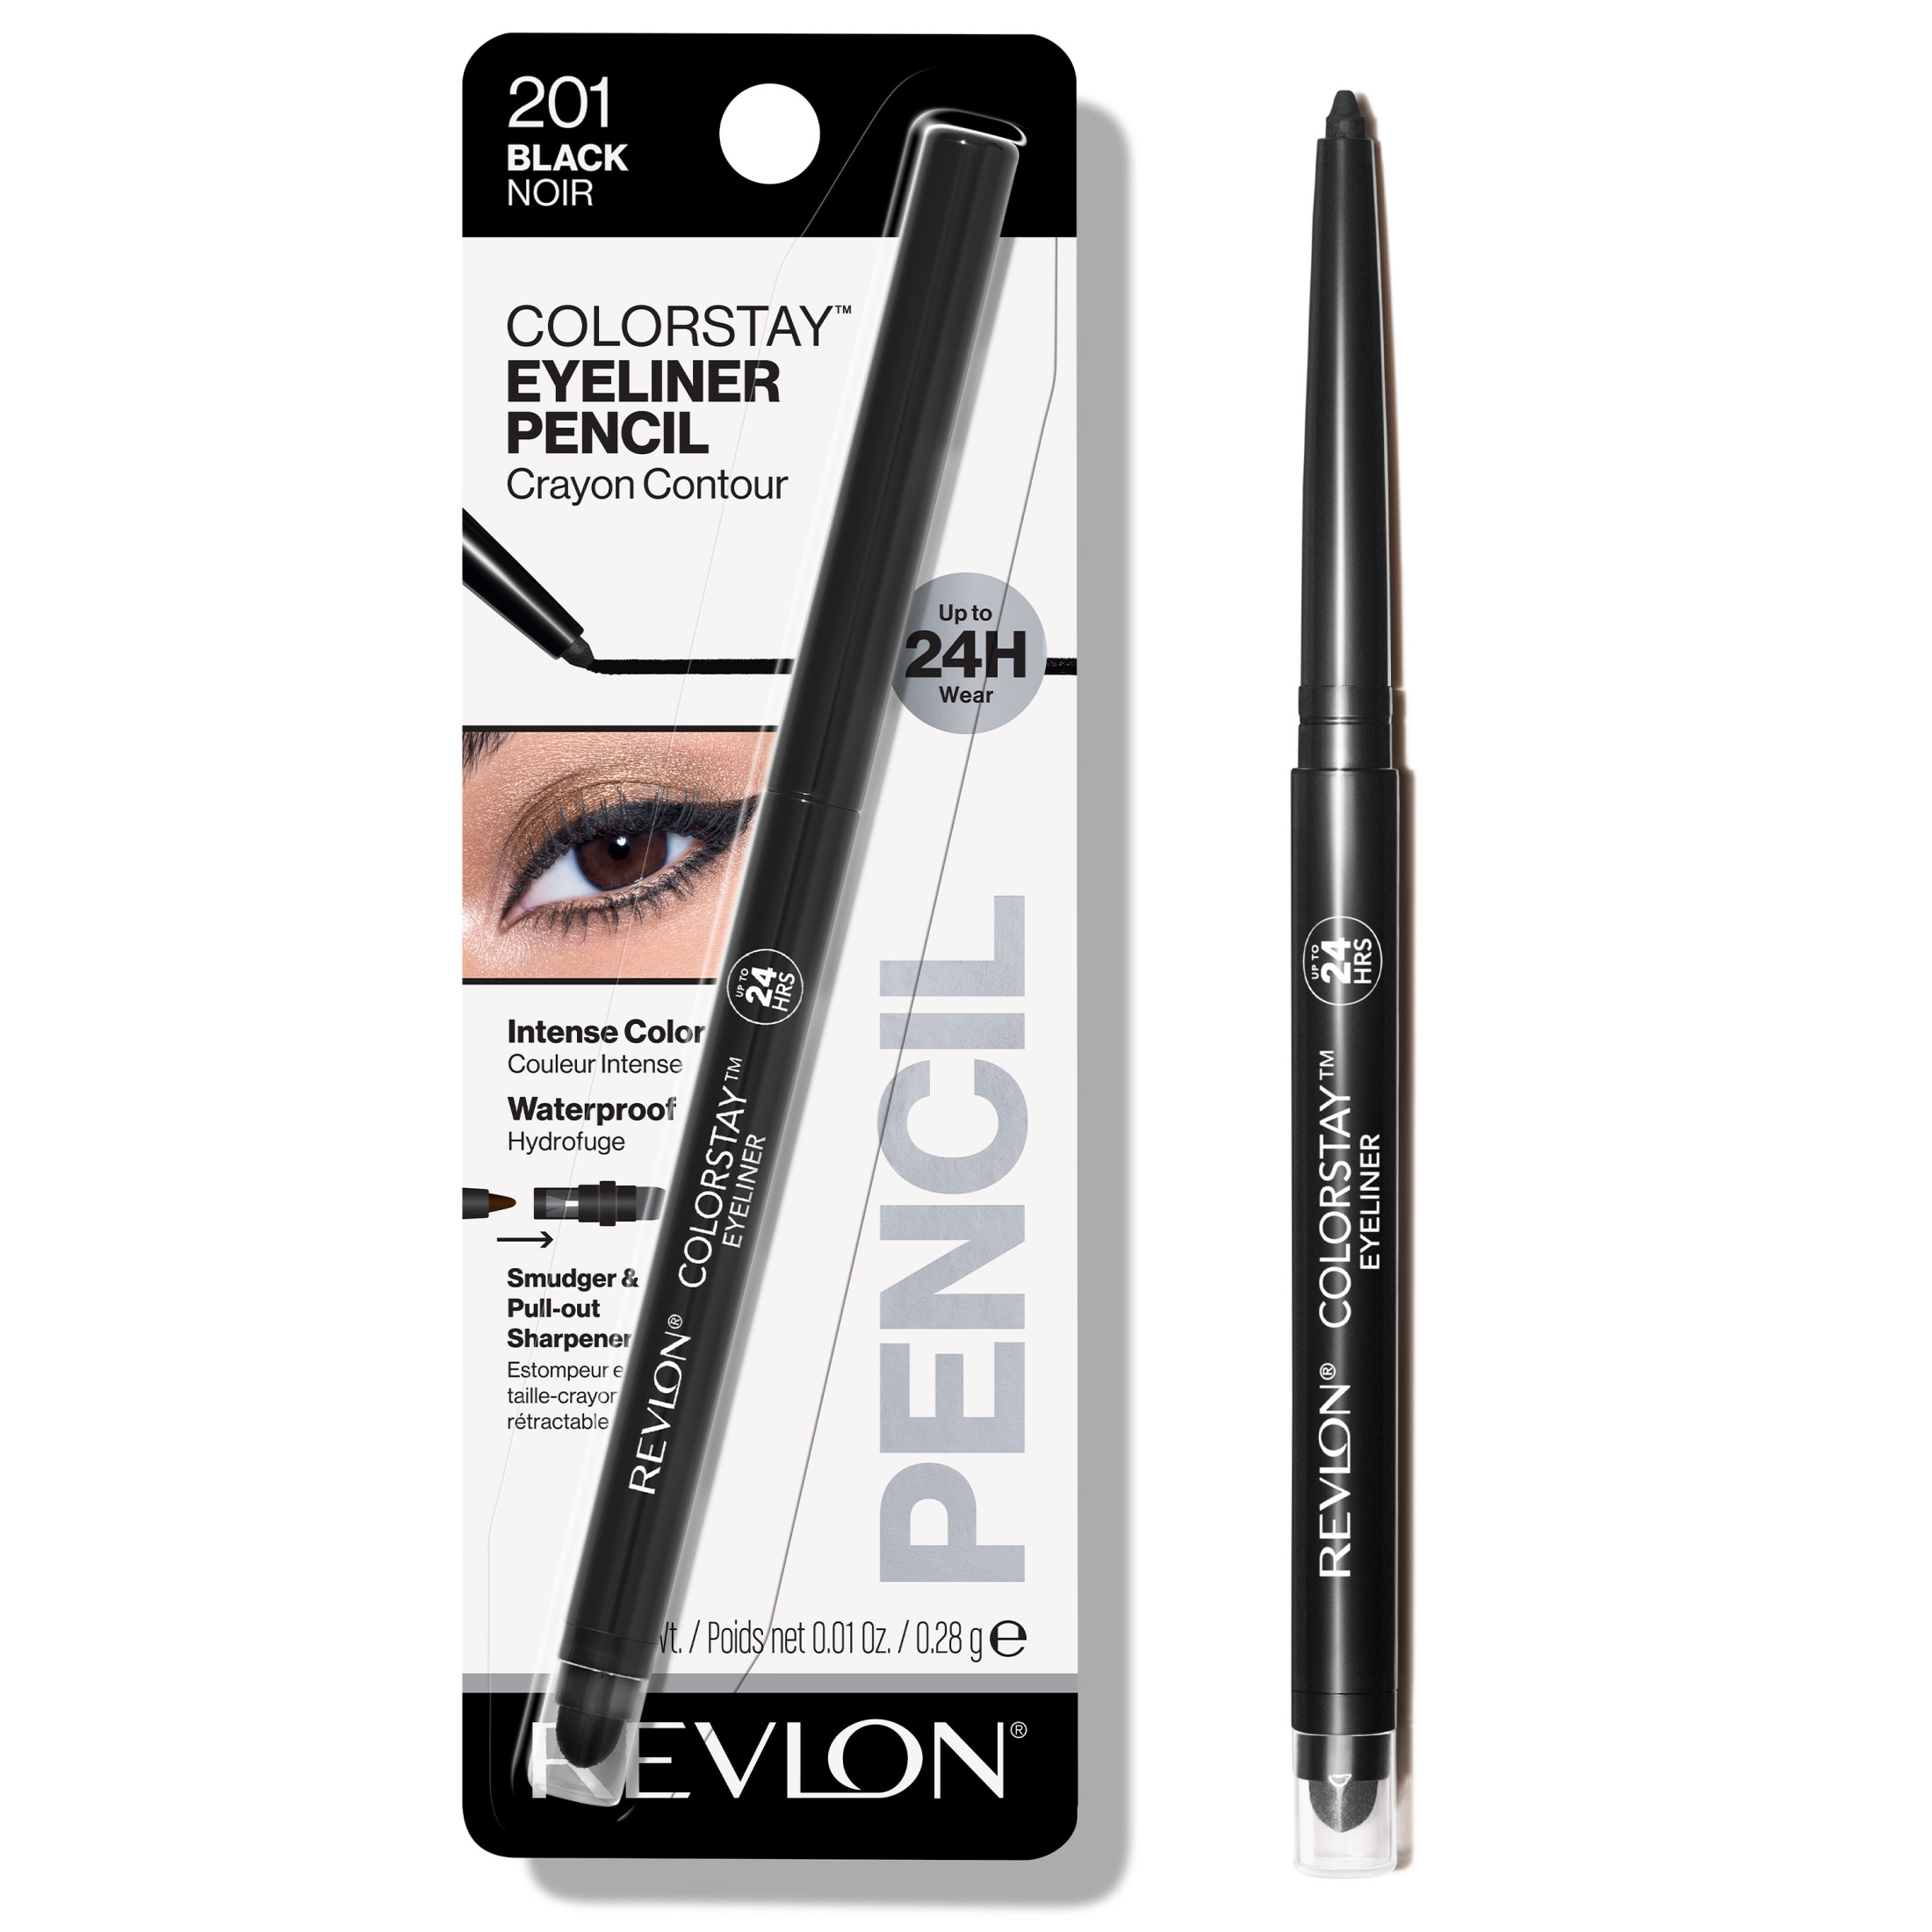 Revlon ColorStay Waterproof Eyeliner Pencil, 24HR Wear, Built-in Sharpener, 201 Black, 0.01 oz - image 1 of 9